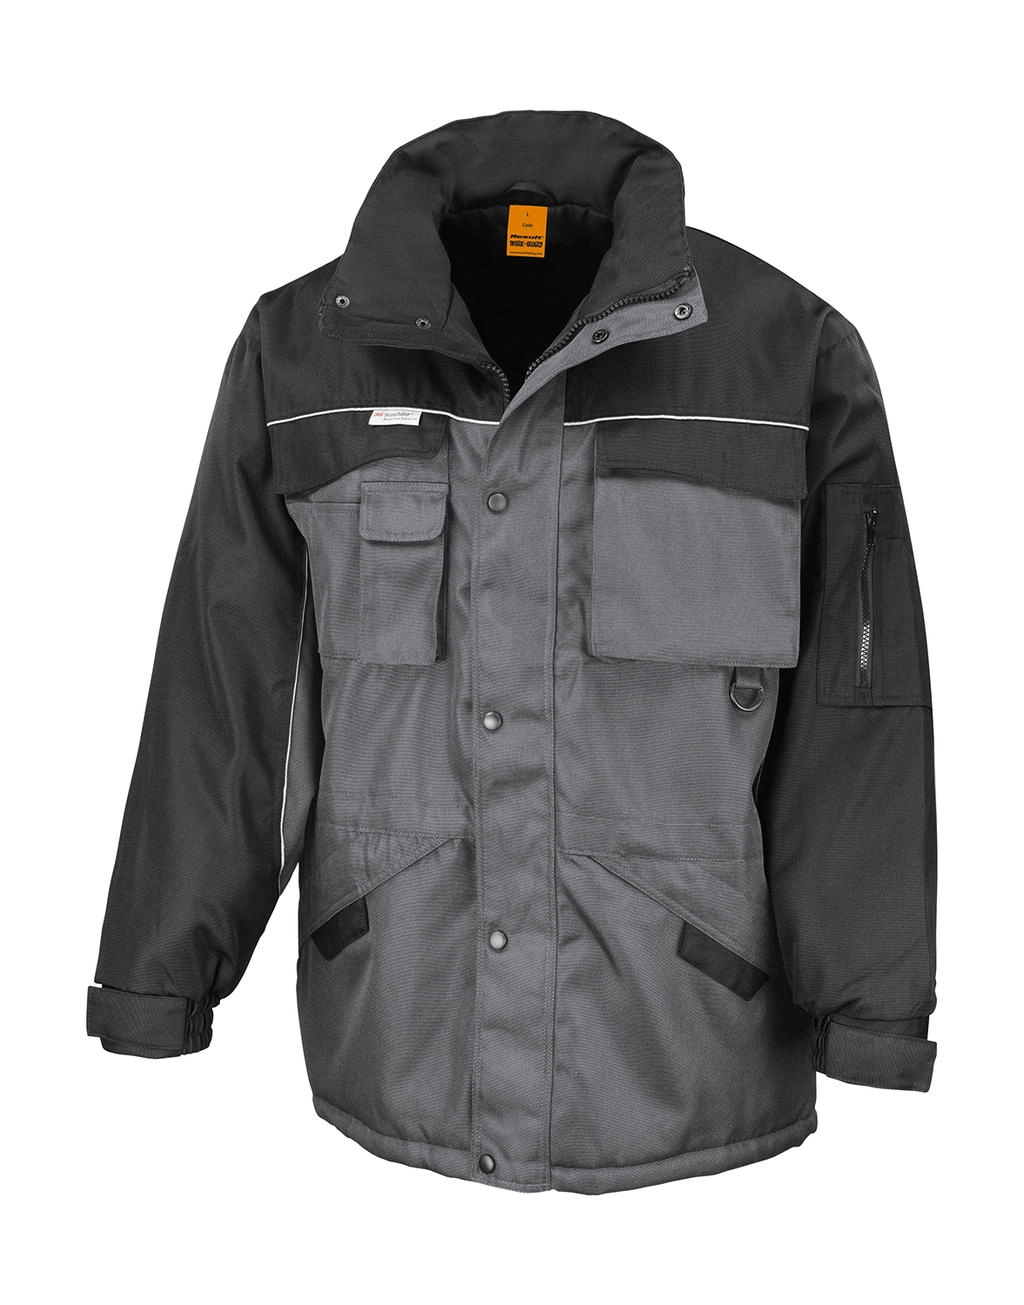 Heavy Duty Combo Jacket zum Besticken und Bedrucken in der Farbe Grey/Black mit Ihren Logo, Schriftzug oder Motiv.